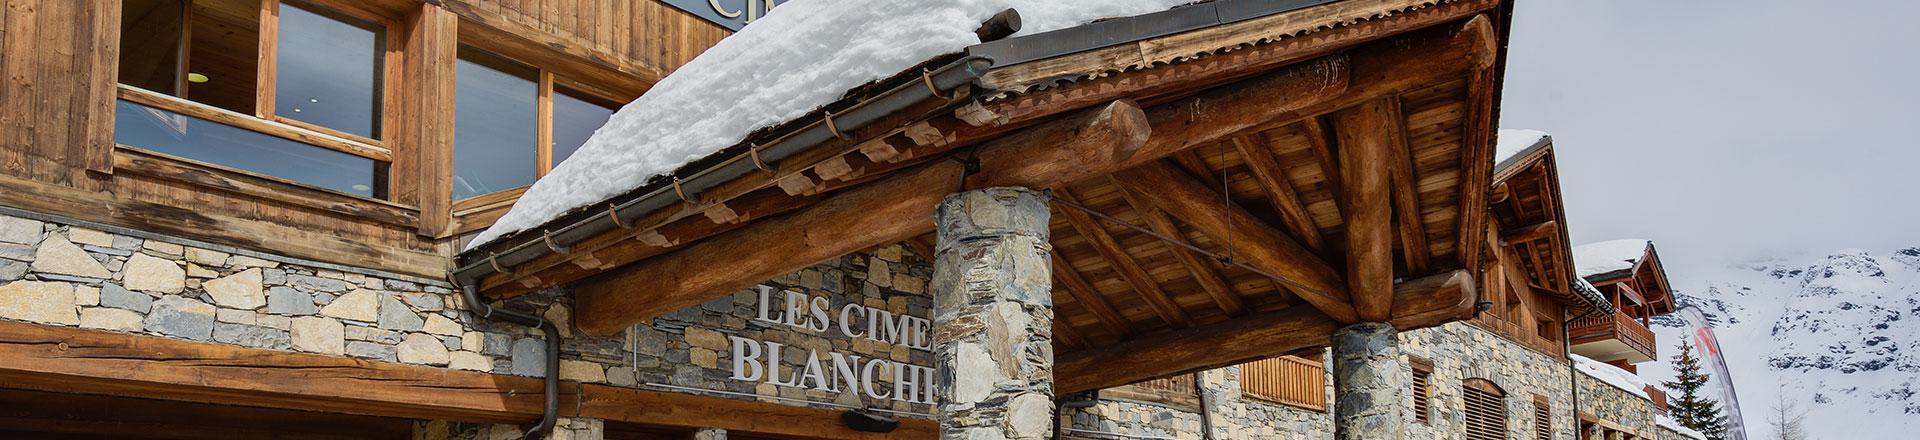 Аренда на лыжном курорте Les Cimes Blanches - La Rosière - зимой под открытым небом